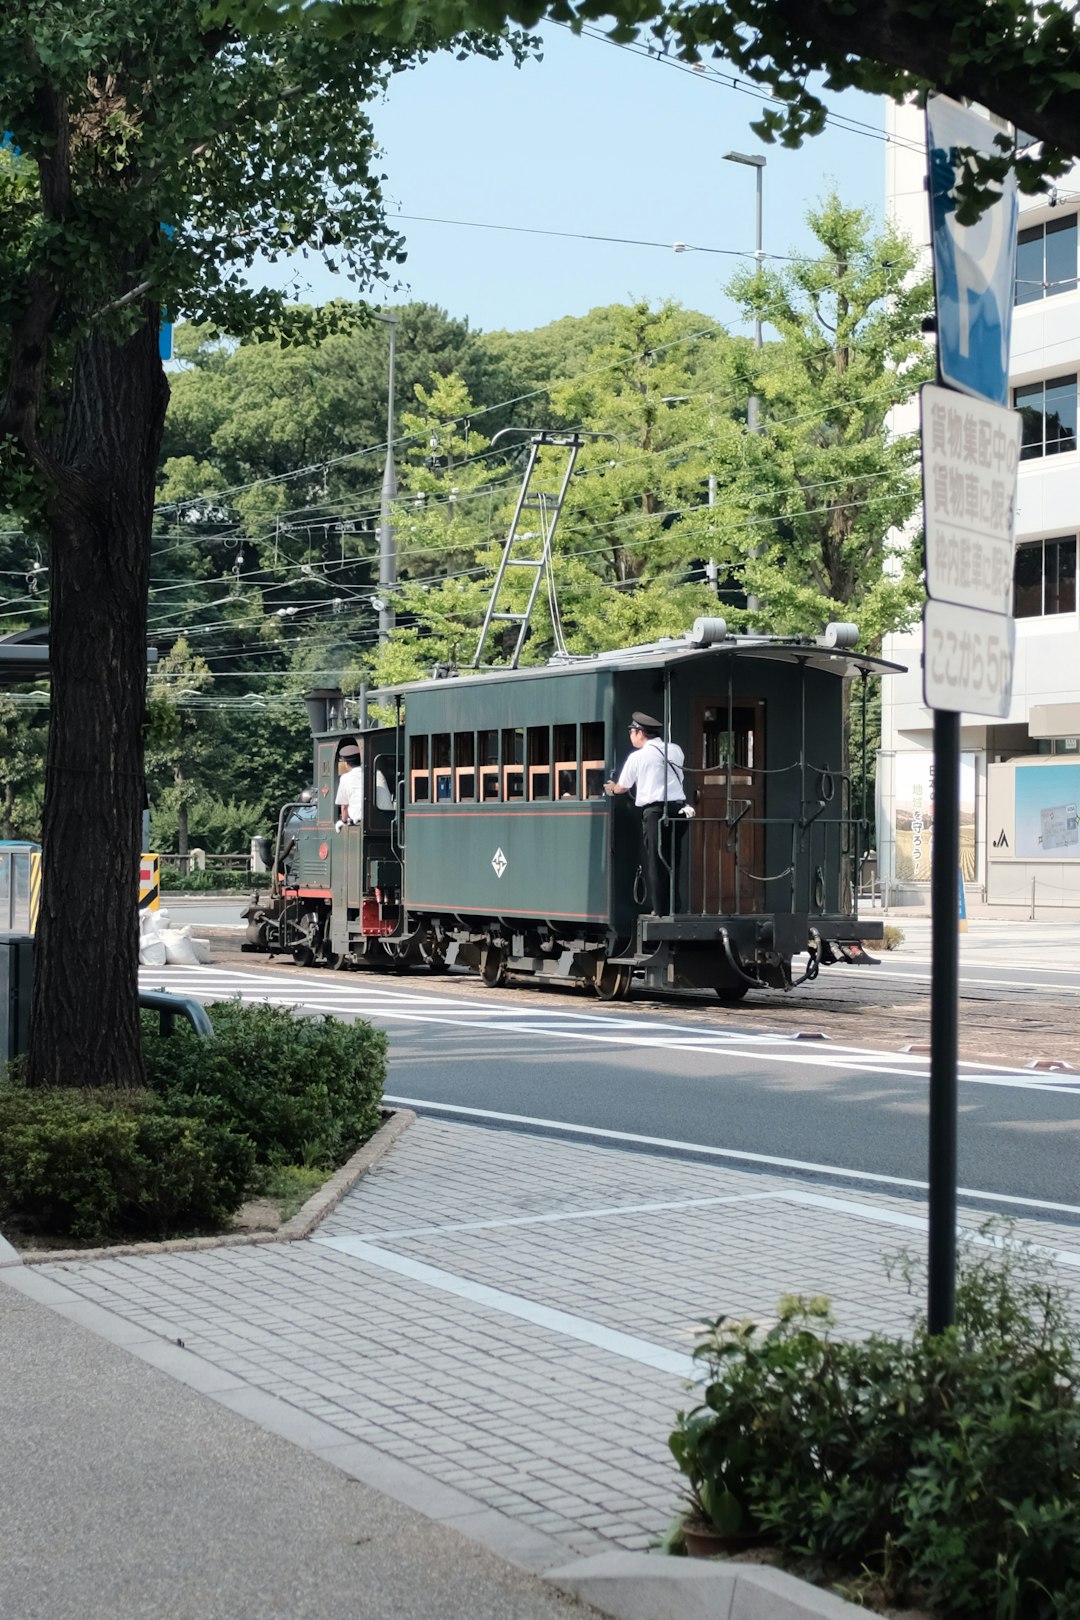 man riding train during daytime